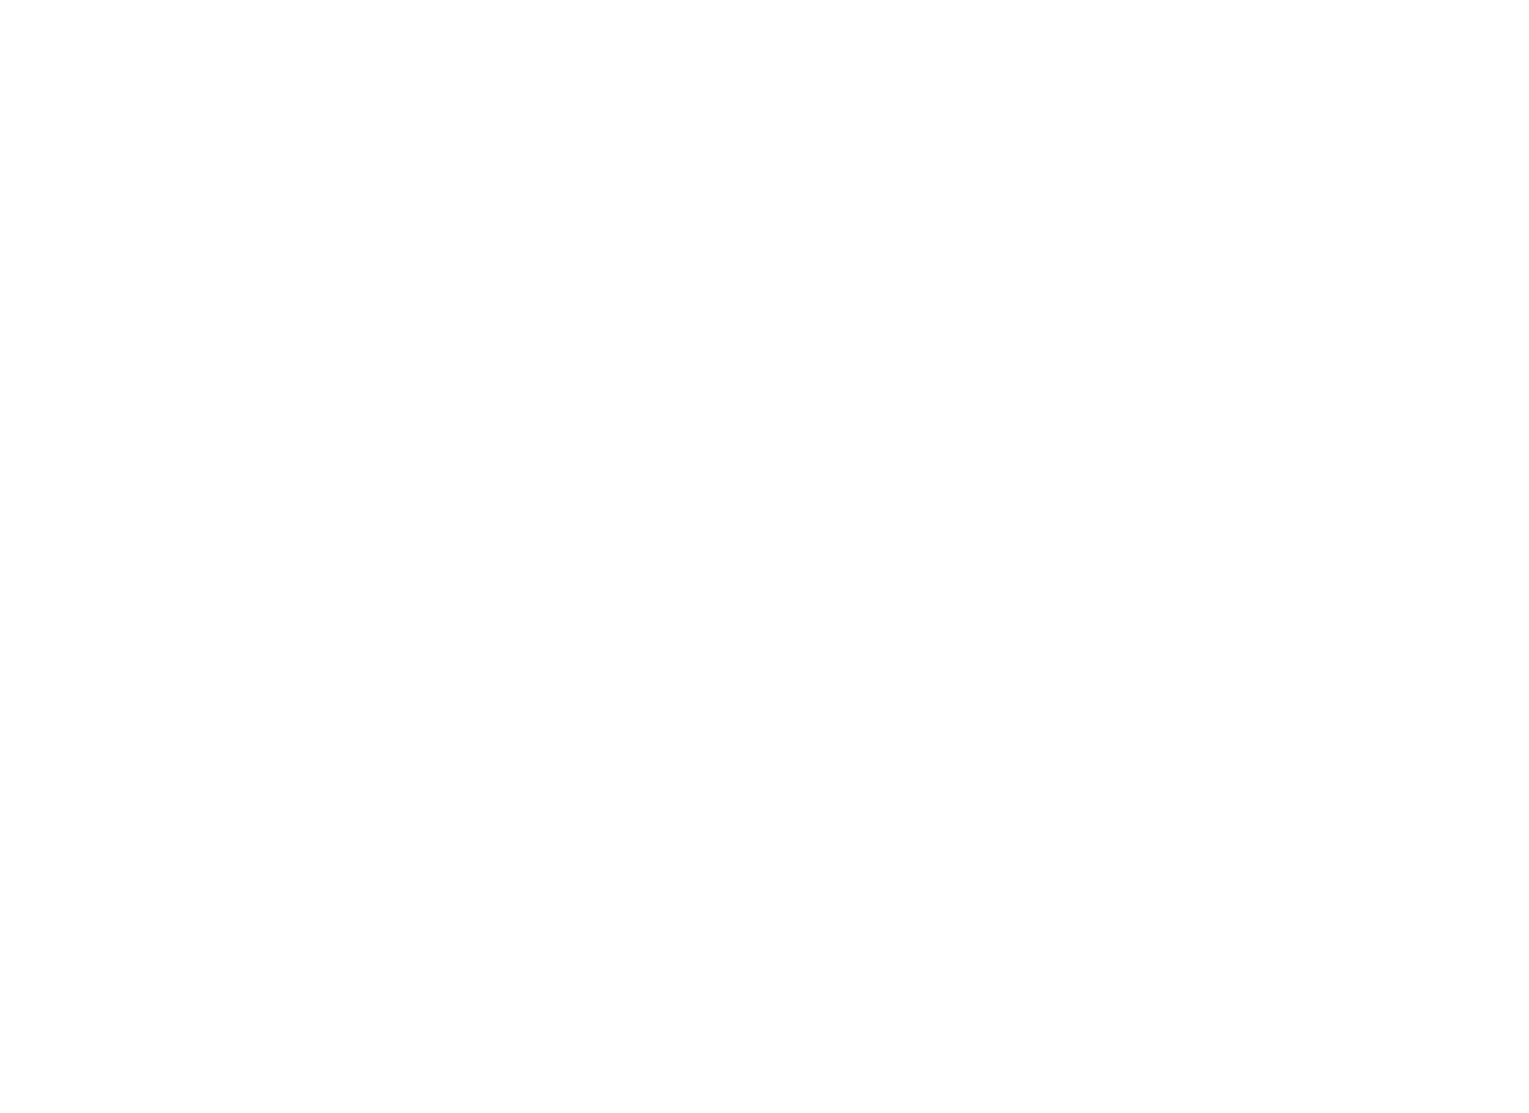 Novonix logo for dark backgrounds (transparent PNG)